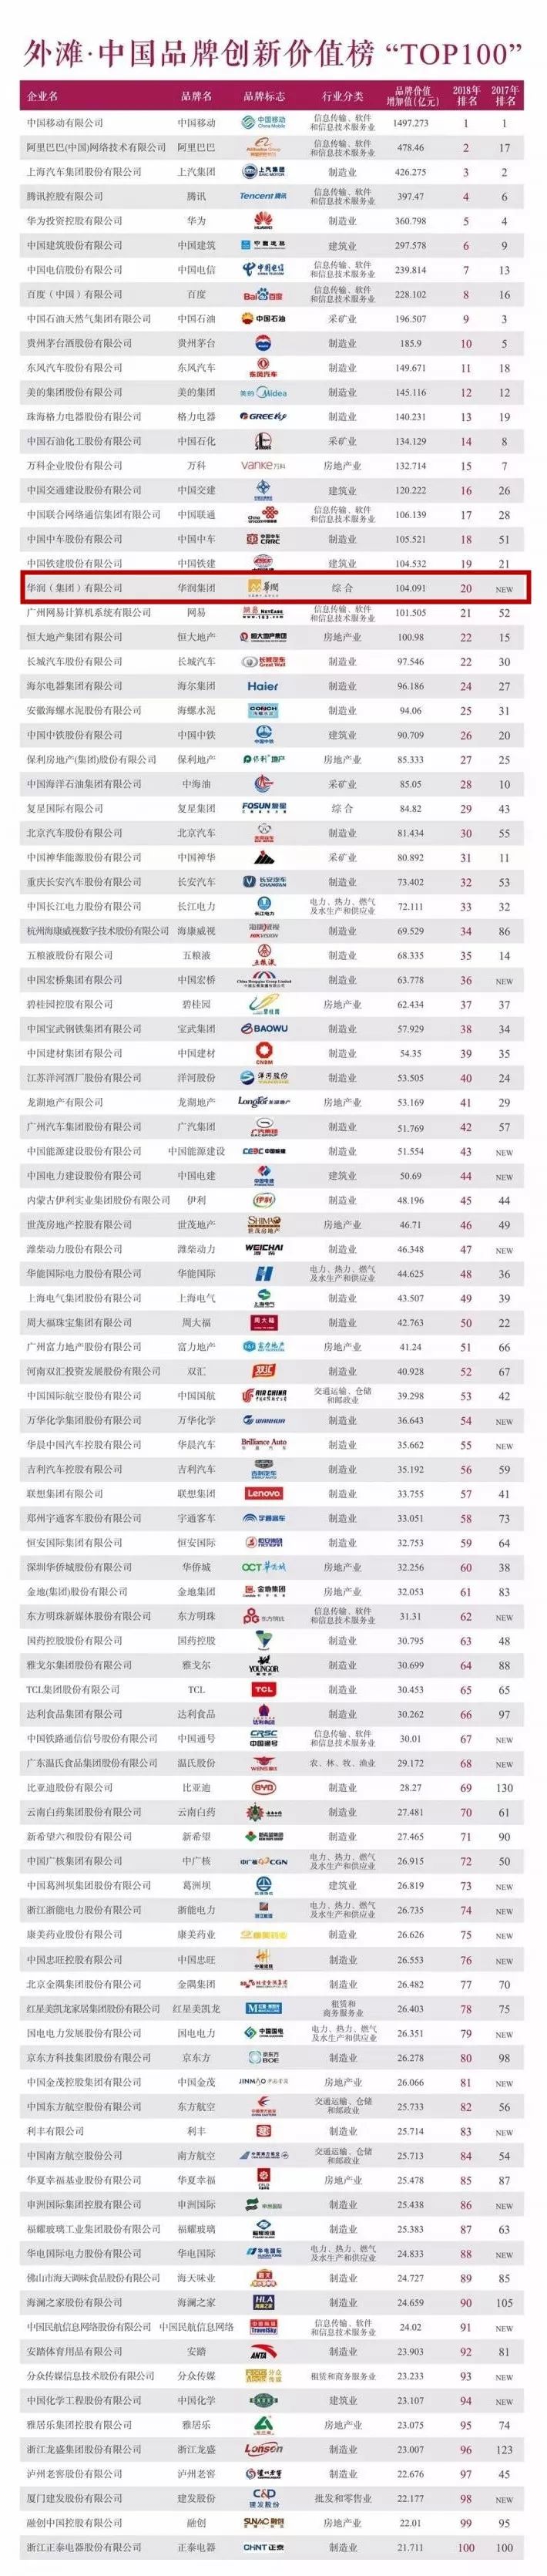 华润集团首次入选"中国品牌价值创新榜"top20